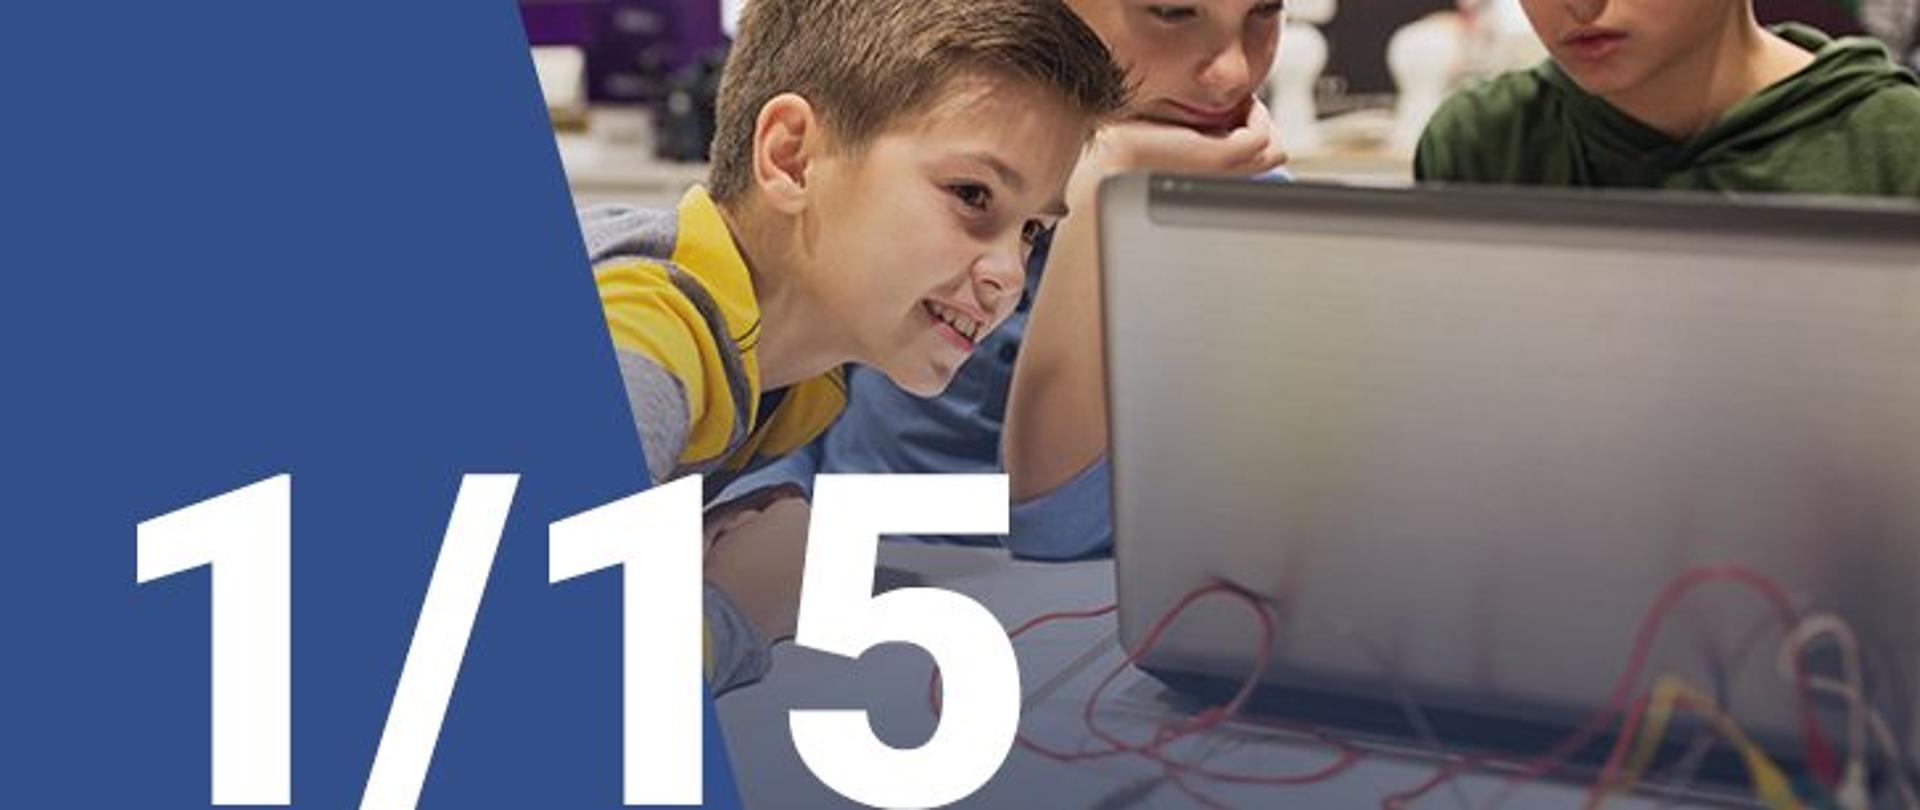 Na zdjęciu widzimy trzech chłopców patrzących na ekran laptopa. W dolnym lewym rogu widoczna jest numeracja zdjęcia (1/15)